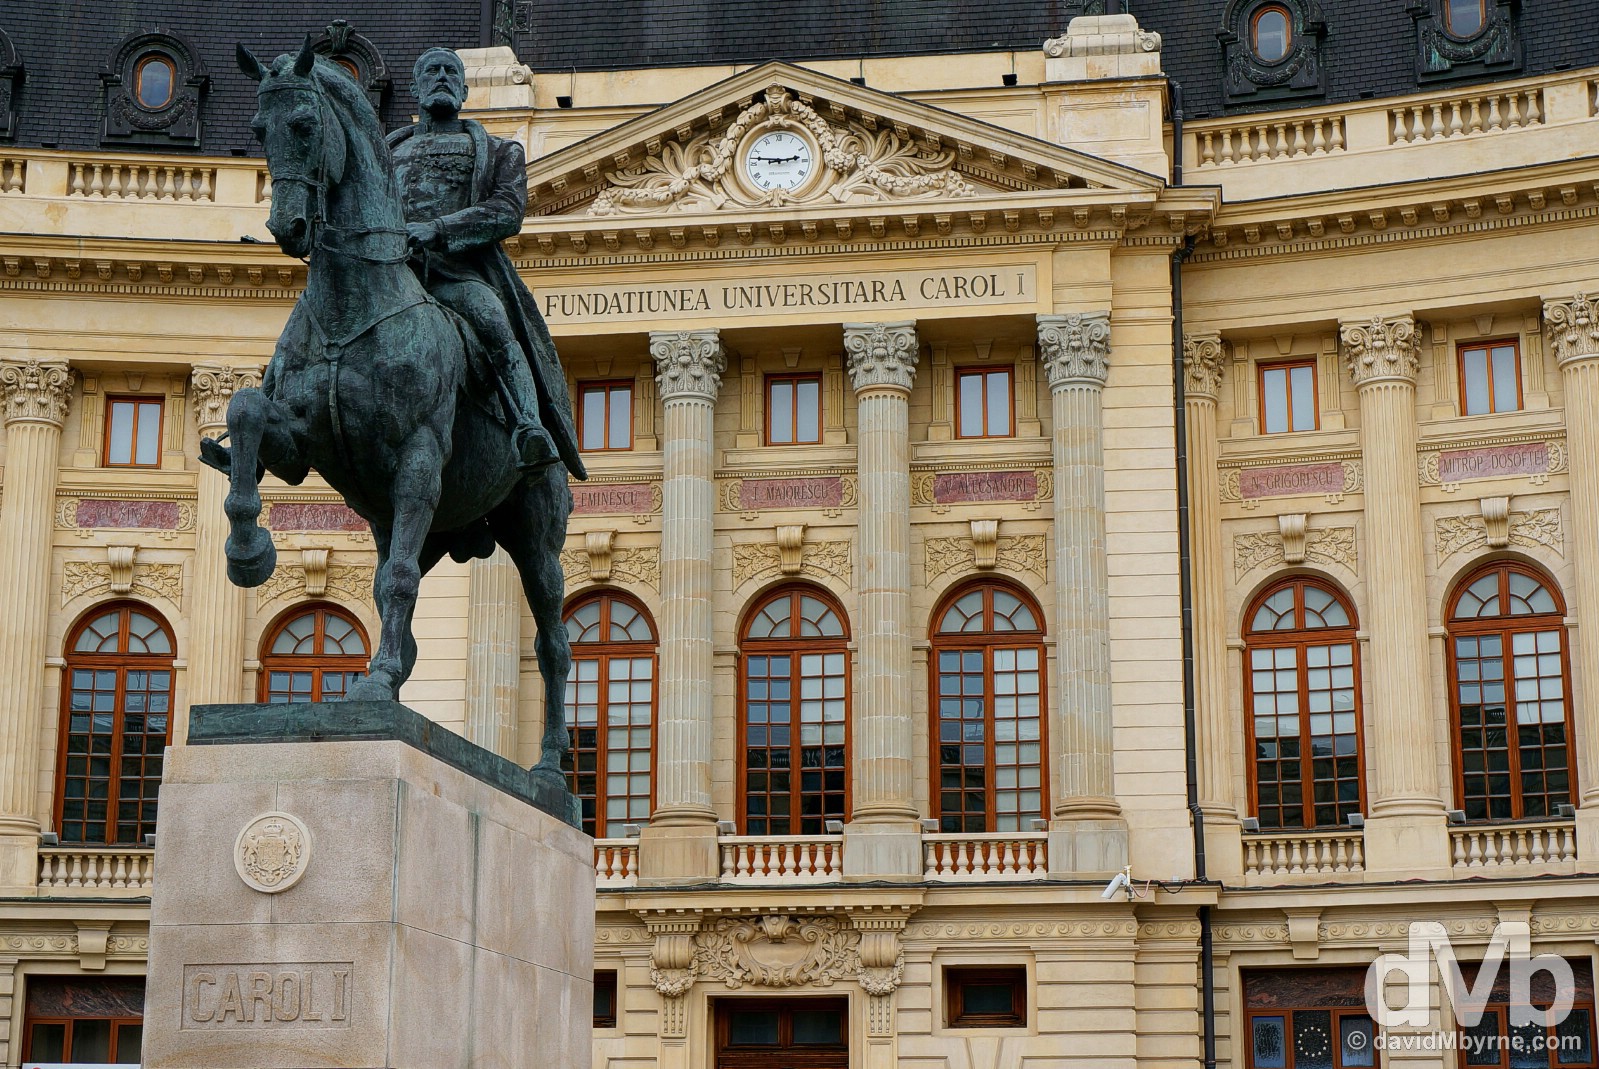 The Central University Library in Piata Revolutiei (Revolution Square), Bucharest, Romania. April 1, 2015.